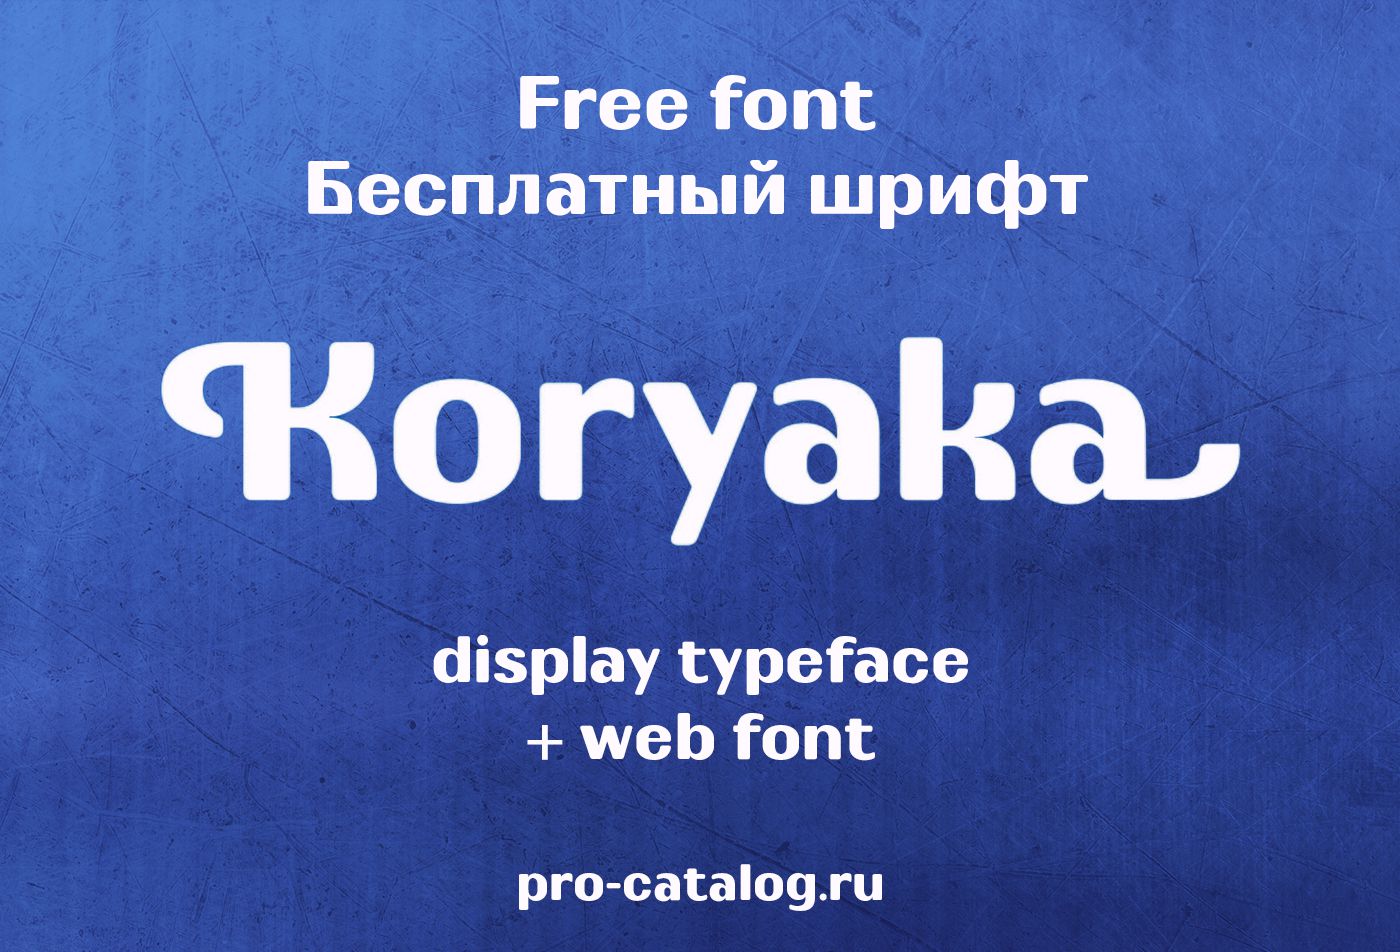 free font koryaka | бесплатный шрифт koryaka с кириллицей скачать